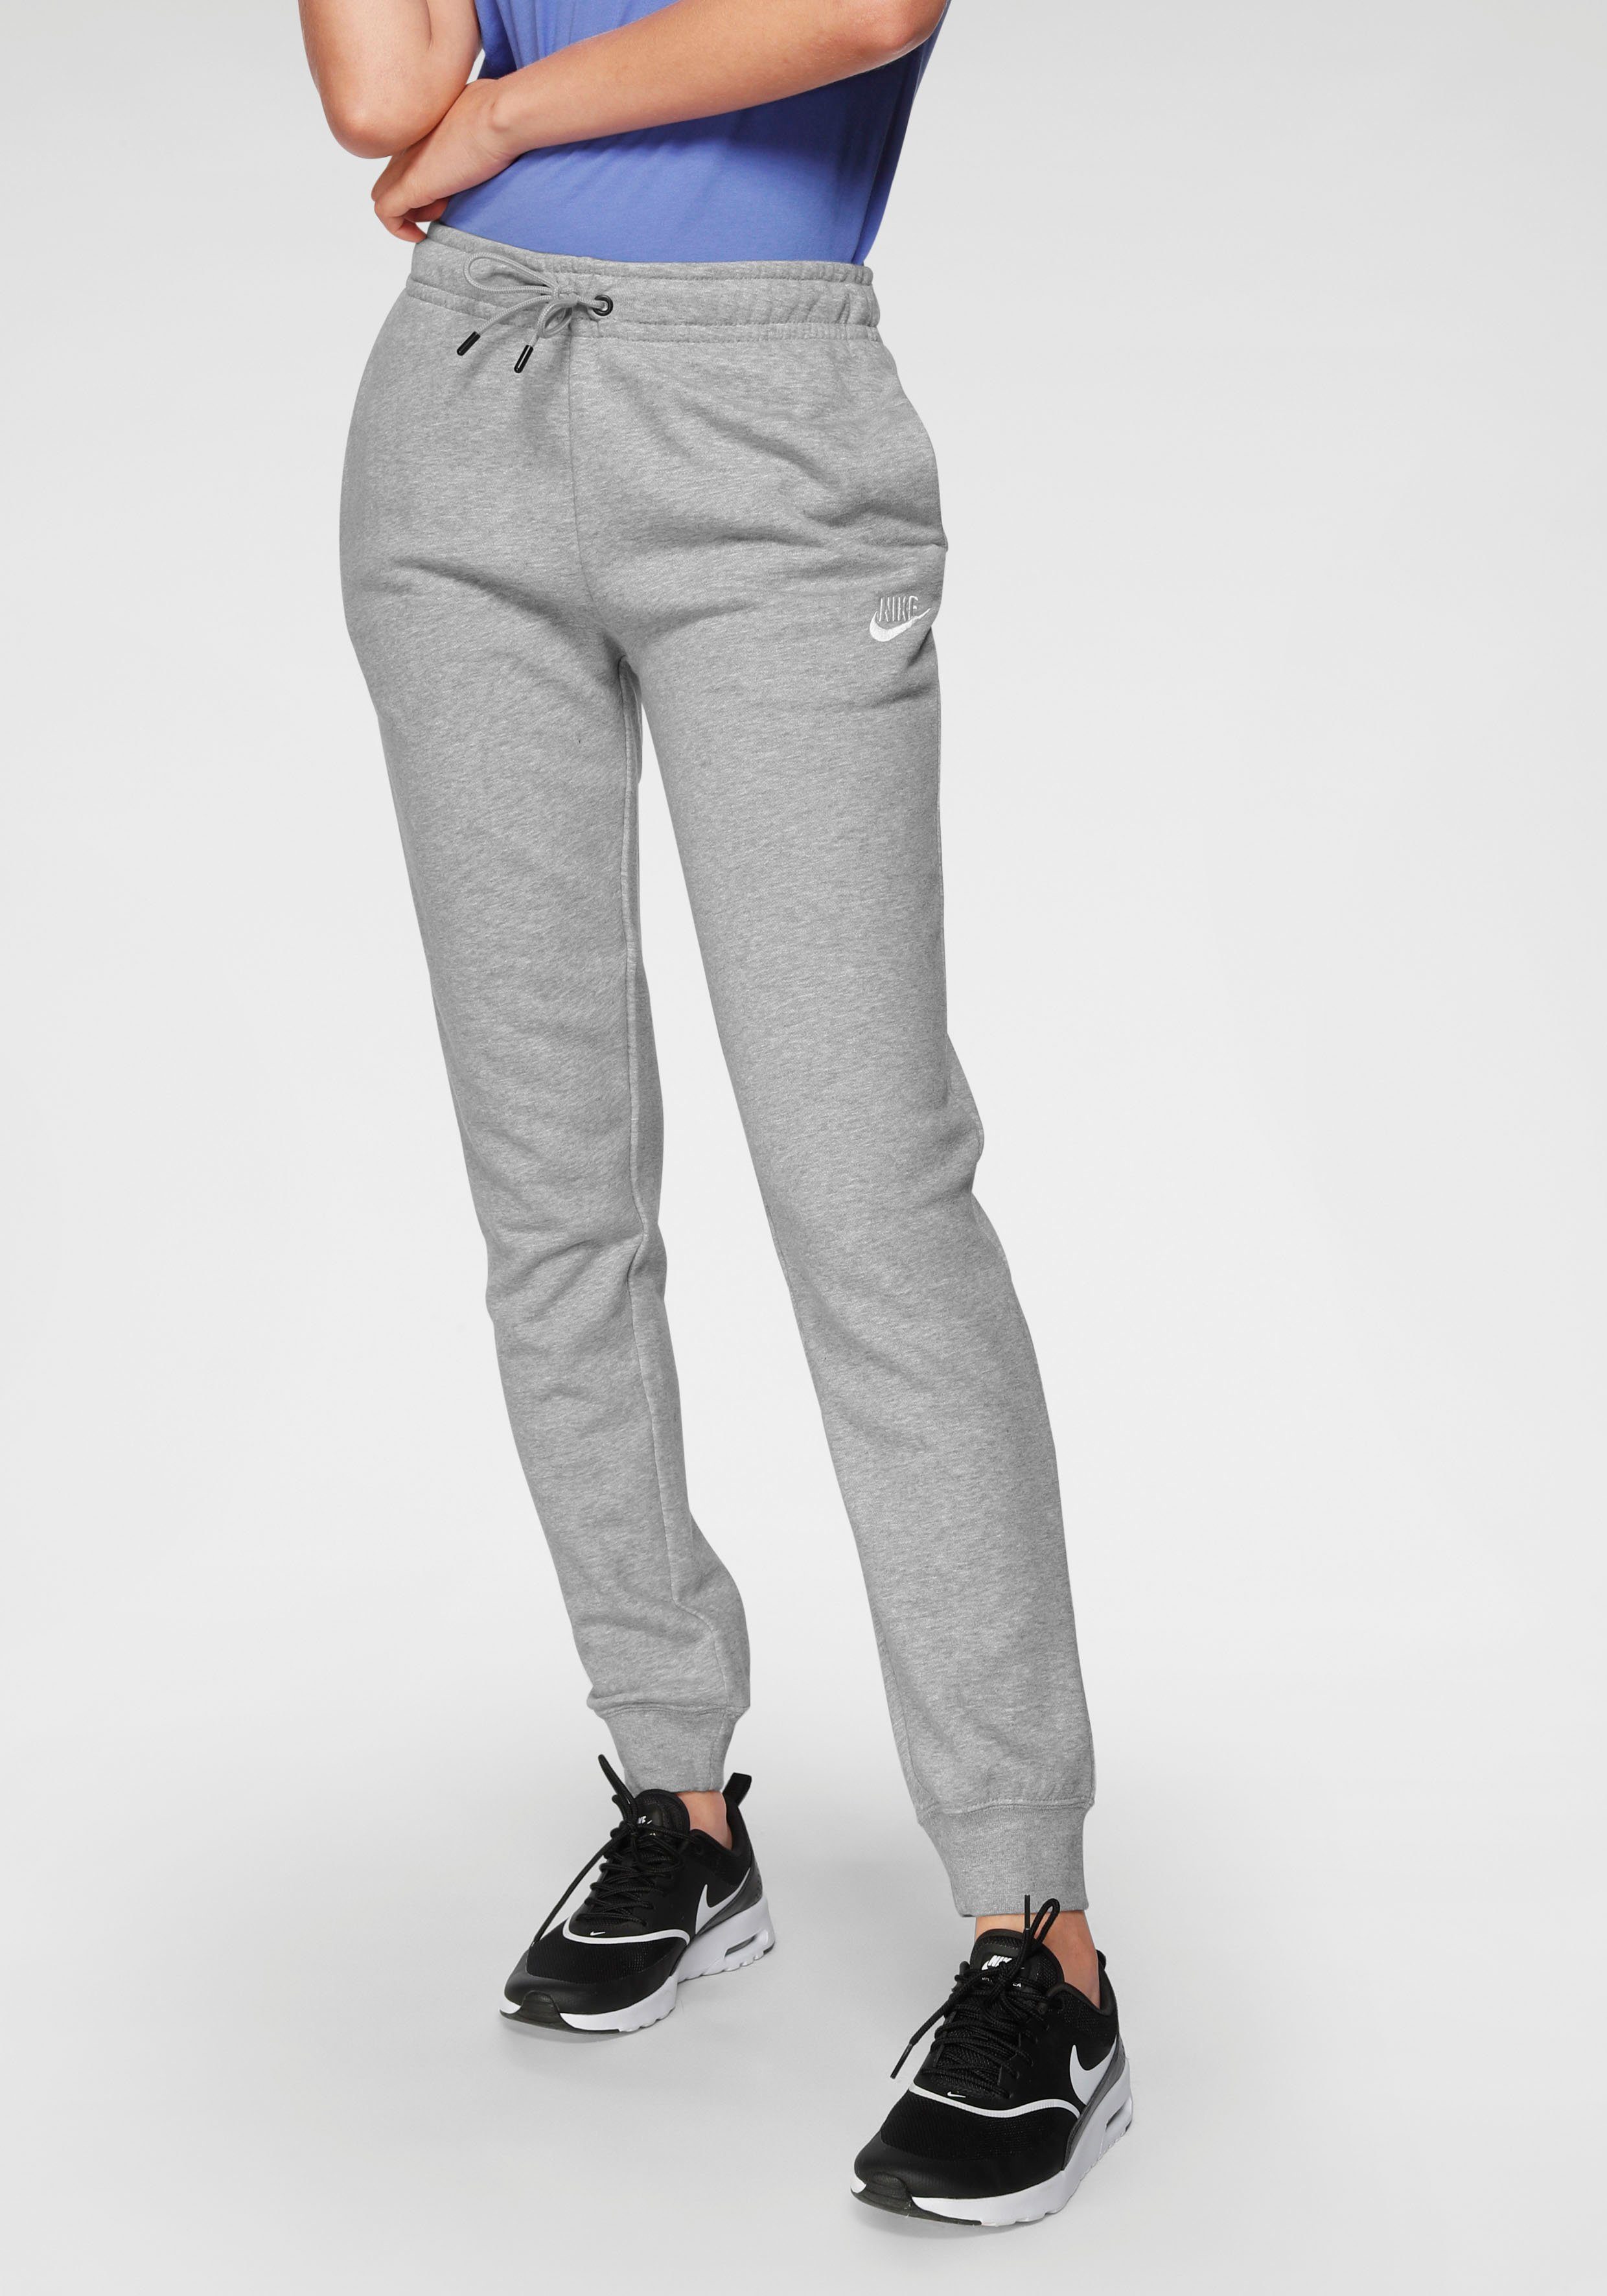 grau-meliert WOMENS Nike PANTS FLEECE Jogginghose ESSENTIAL Sportswear